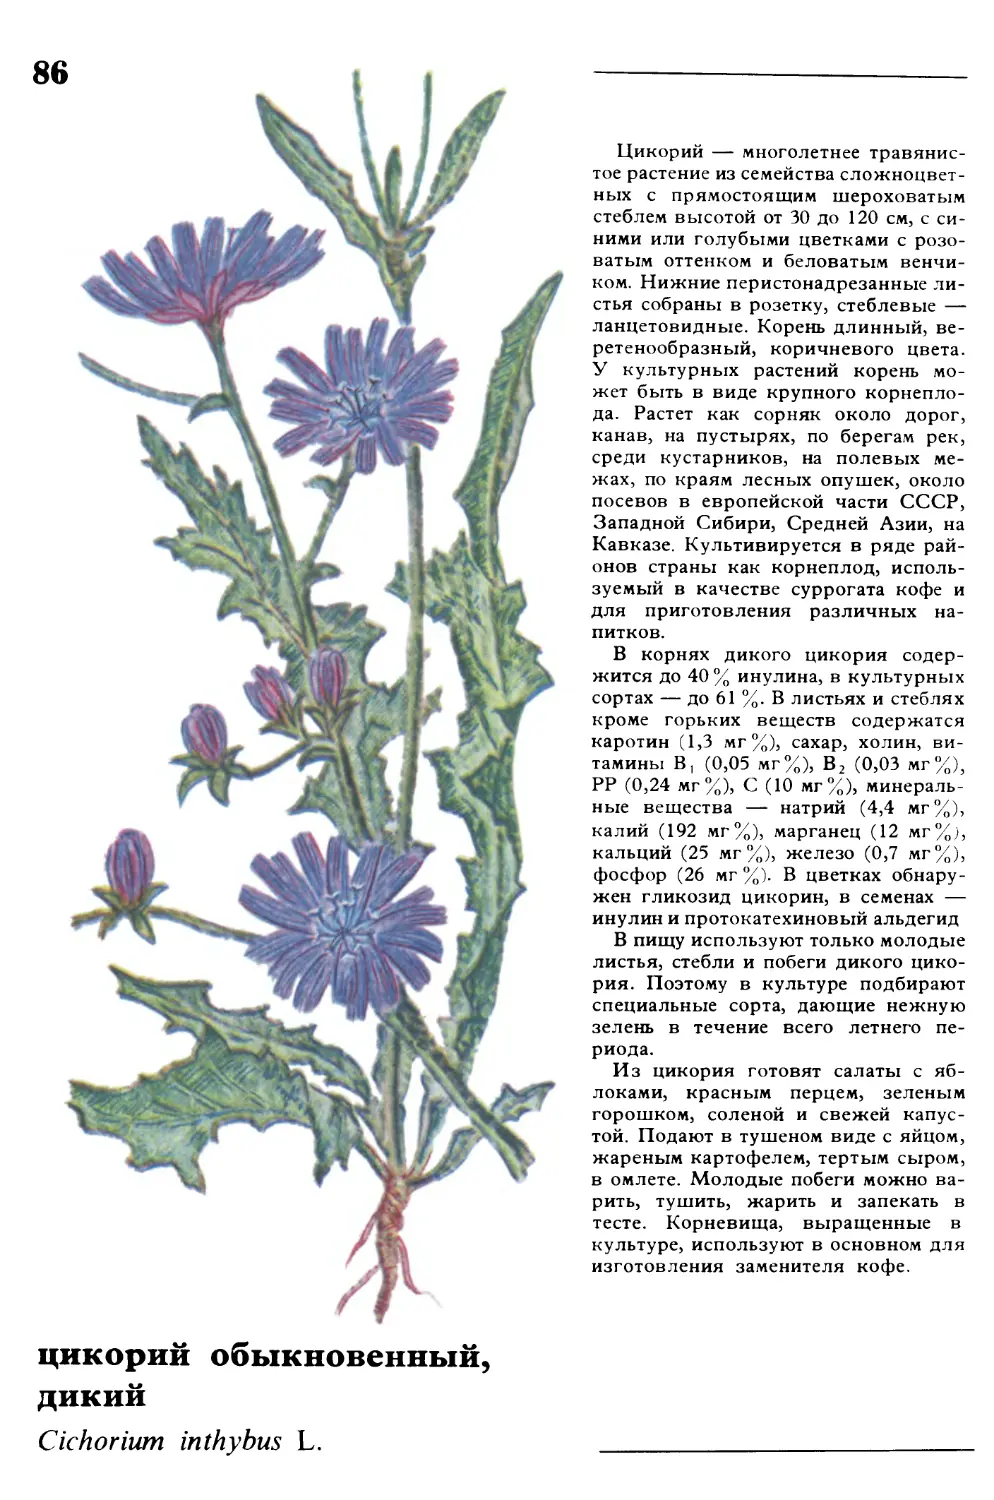 Цикорий
цикорий обыкновенный, дикий
Cichorium inthybus L.